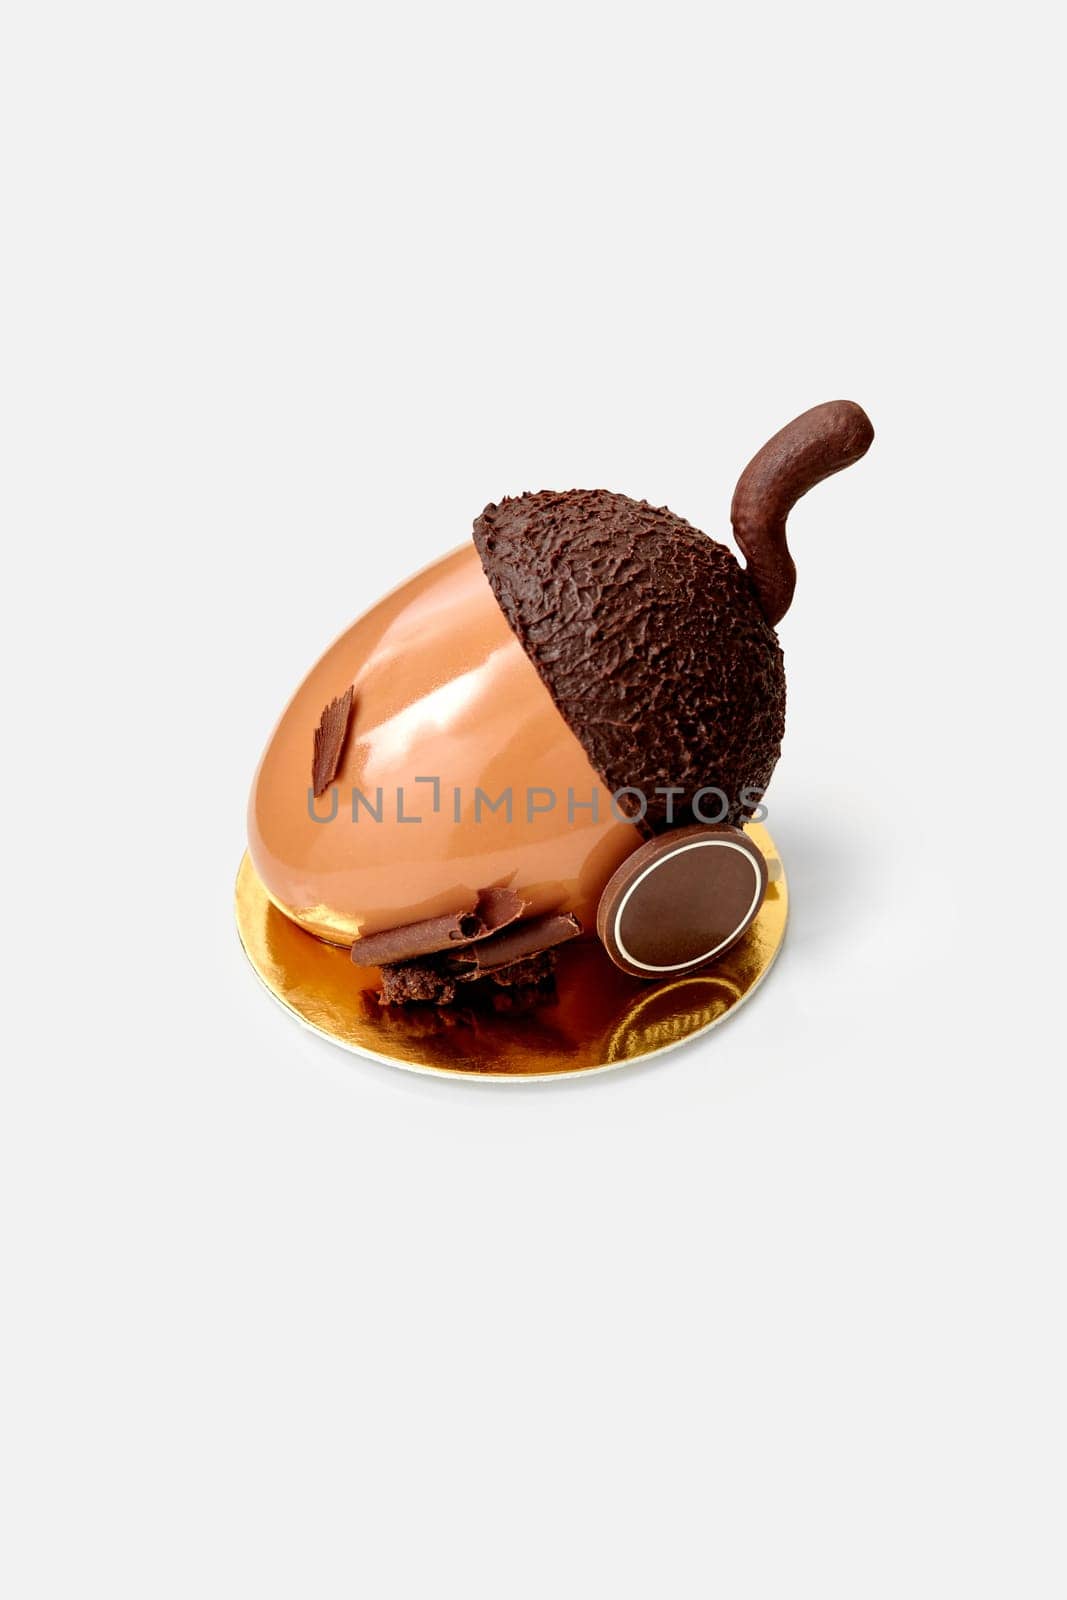 Chocolate acorn shaped cake in glossy ganache on white by nazarovsergey